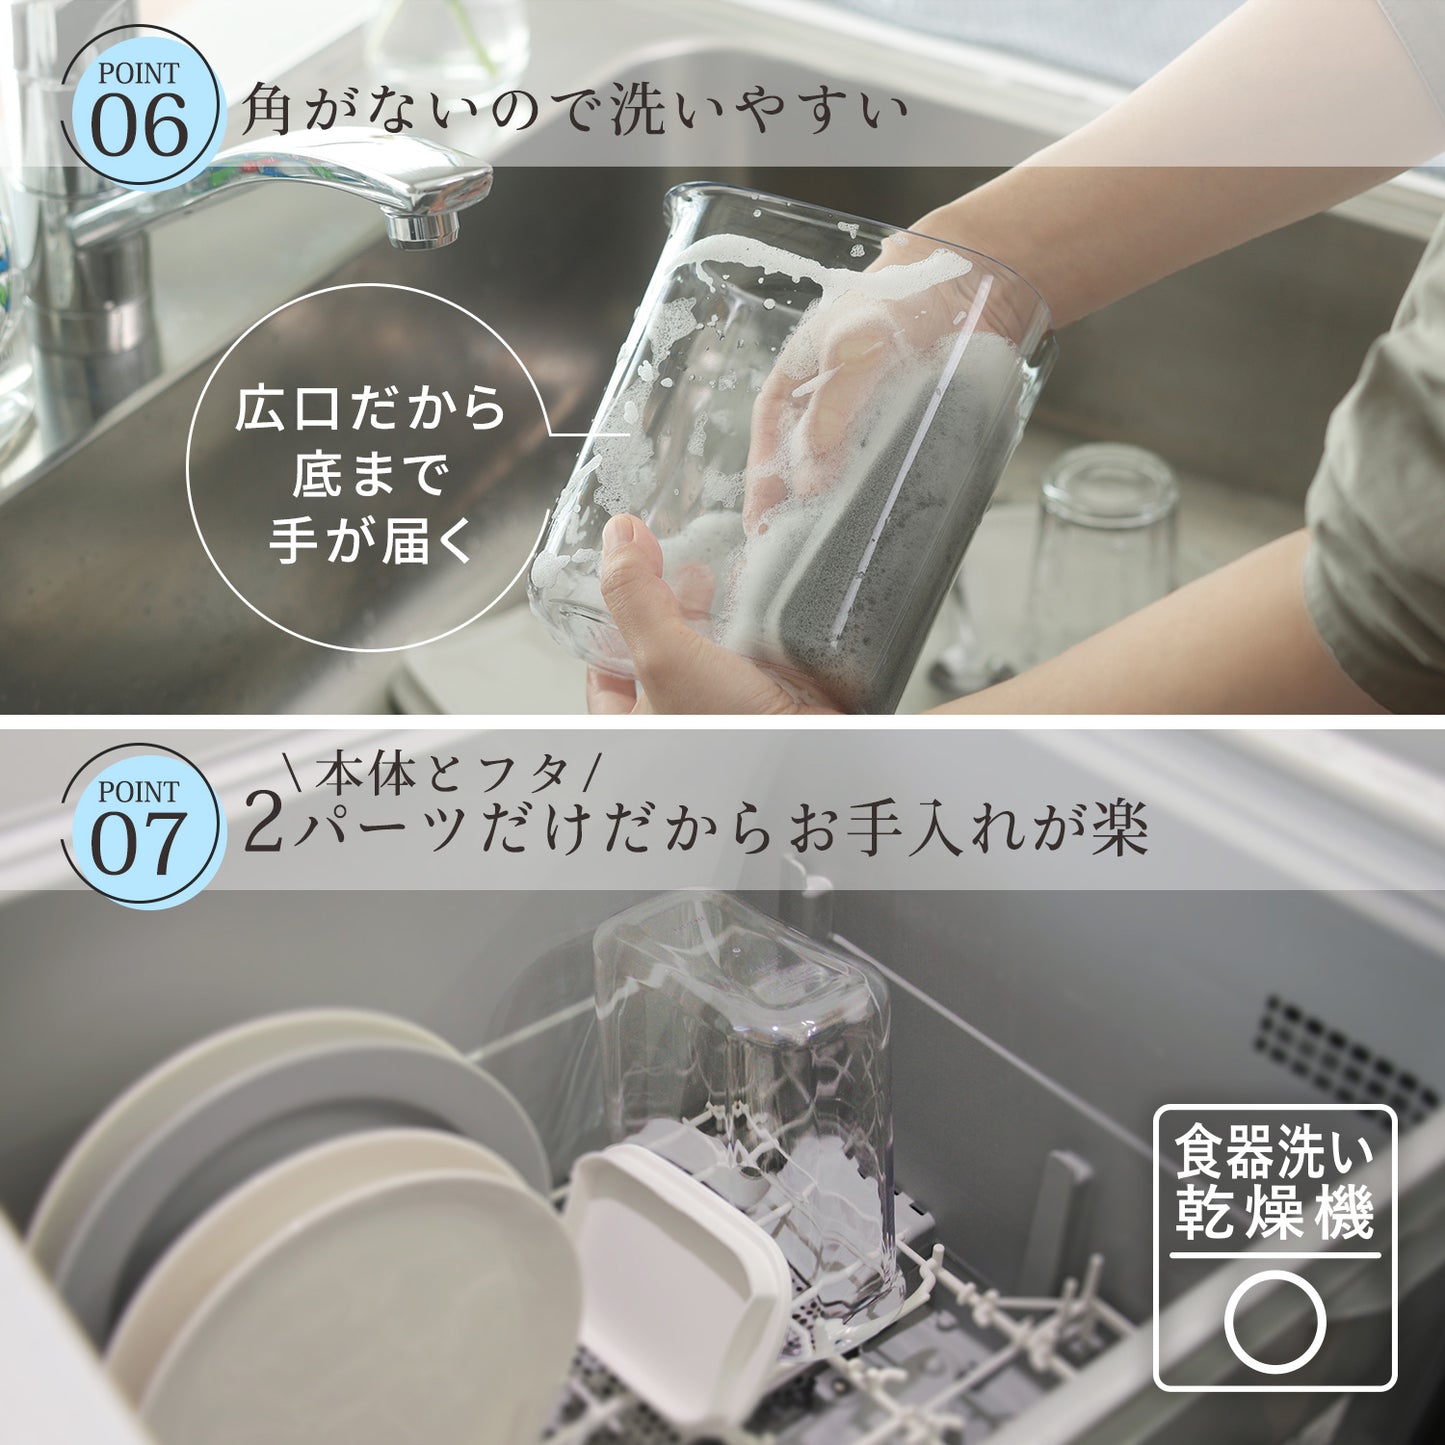 【預購】日本進口 迷你冰箱縫隙冷水瓶 (1L)